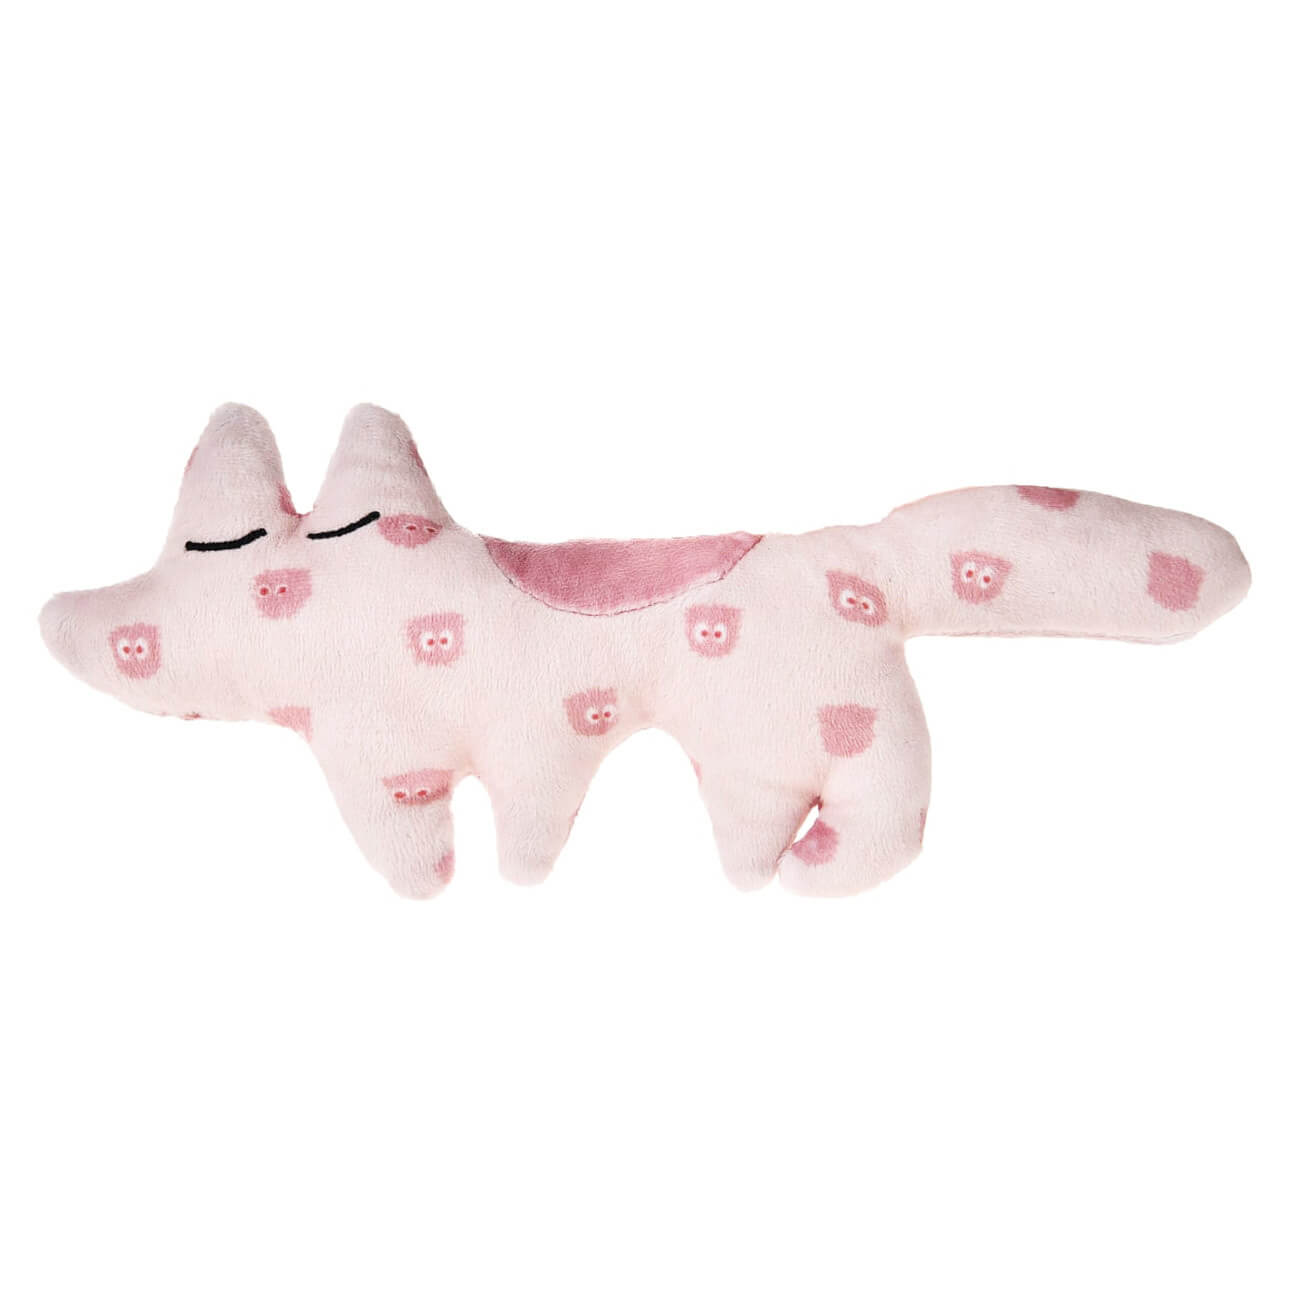 Игрушка для щенков, 23х10 см, полиэстер, розовая, Лиса, Small pet игрушка для щенков 20х10 см полиэстер розовая ежик small pet